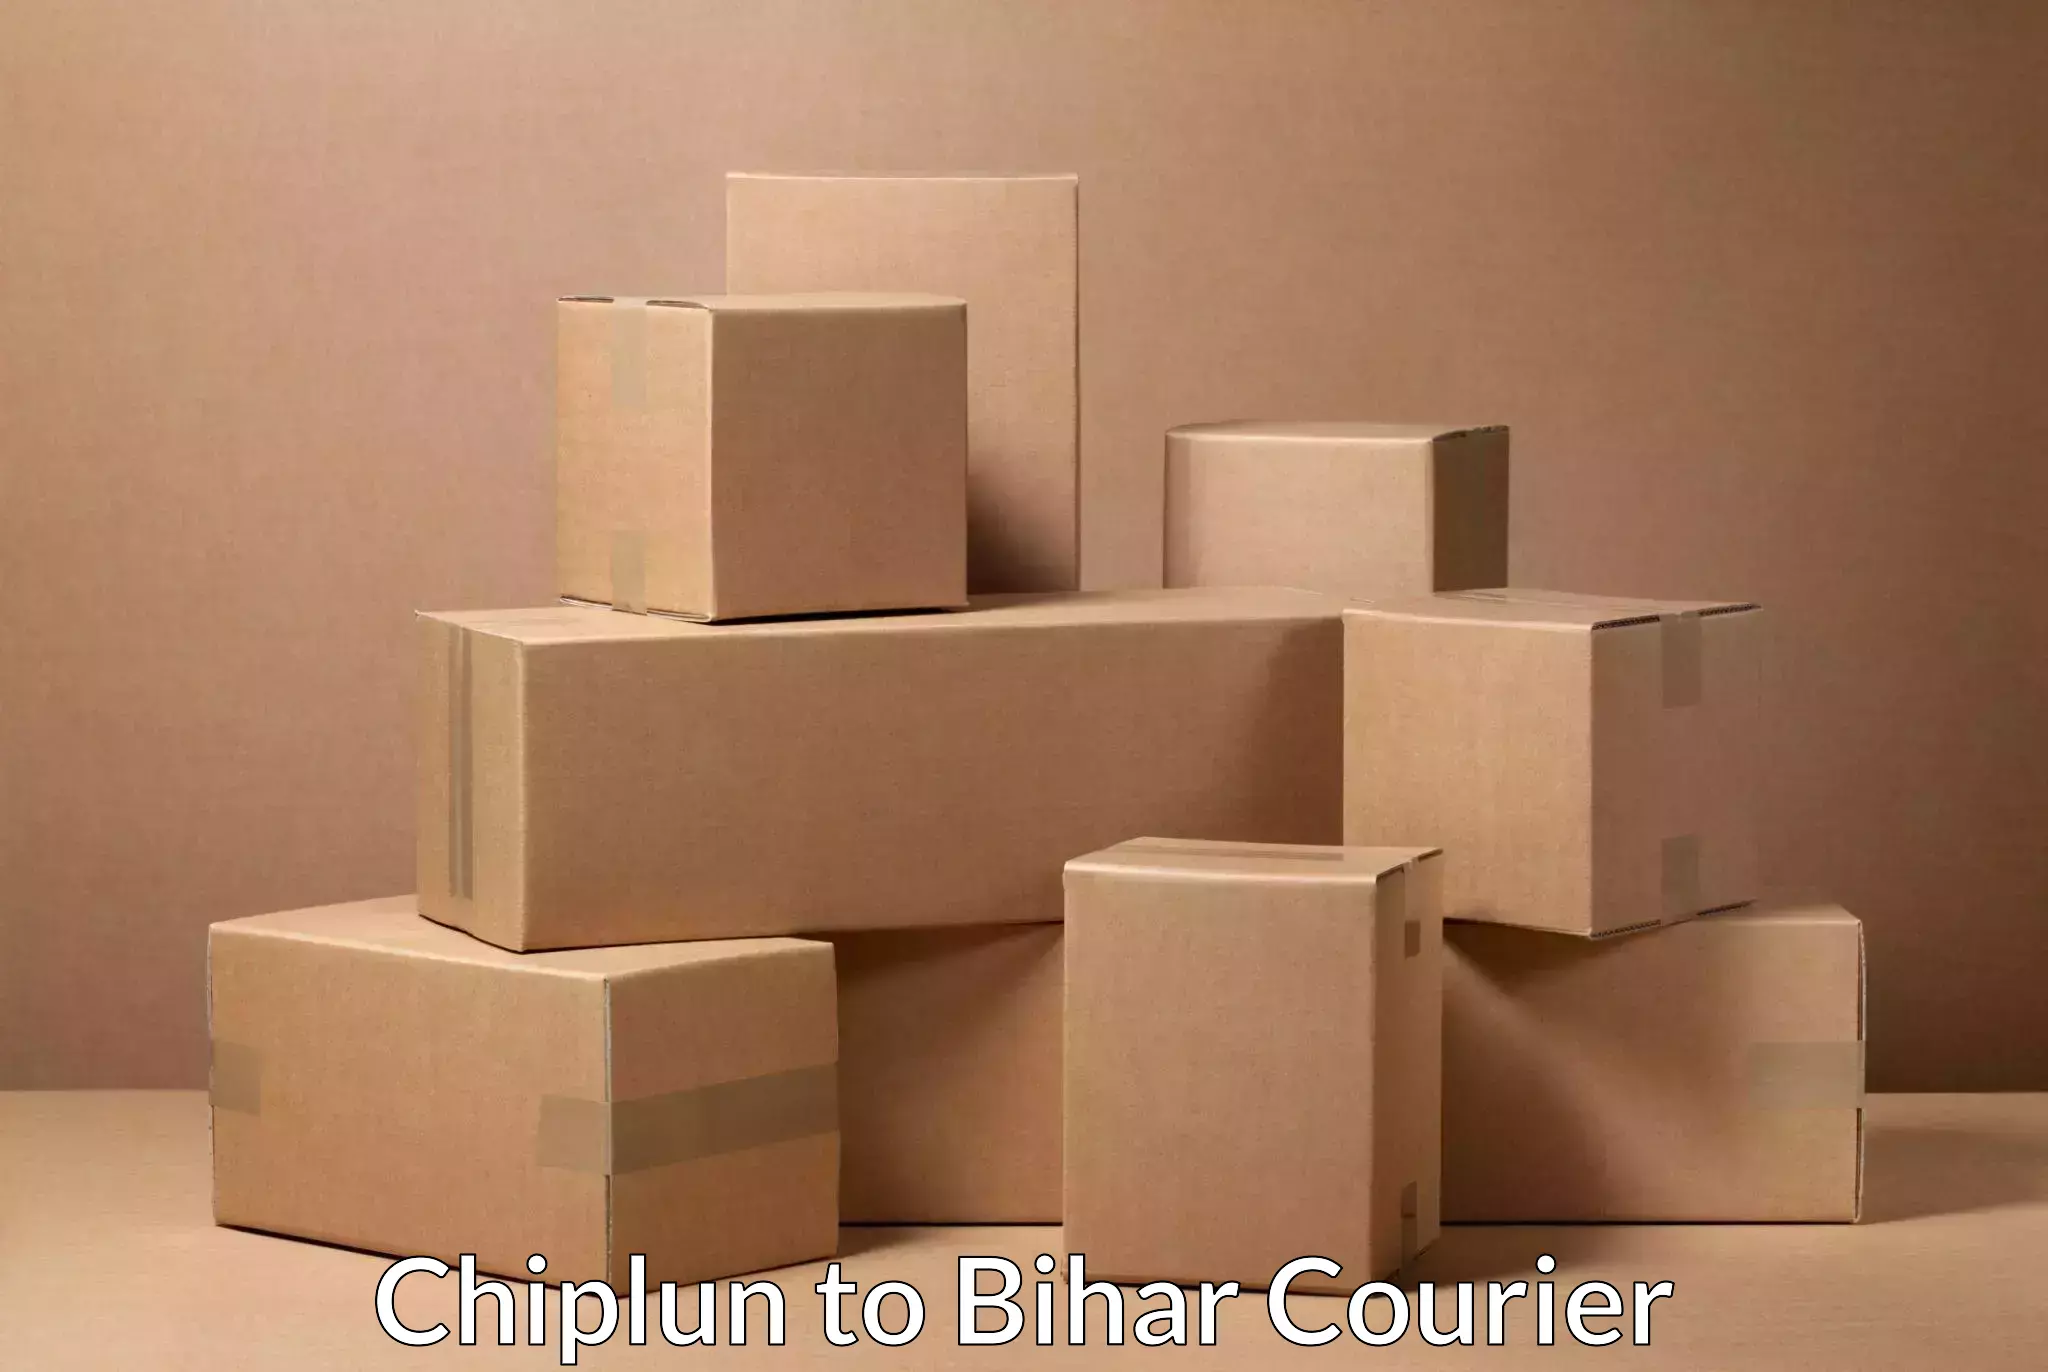 Premium courier services Chiplun to Bihar